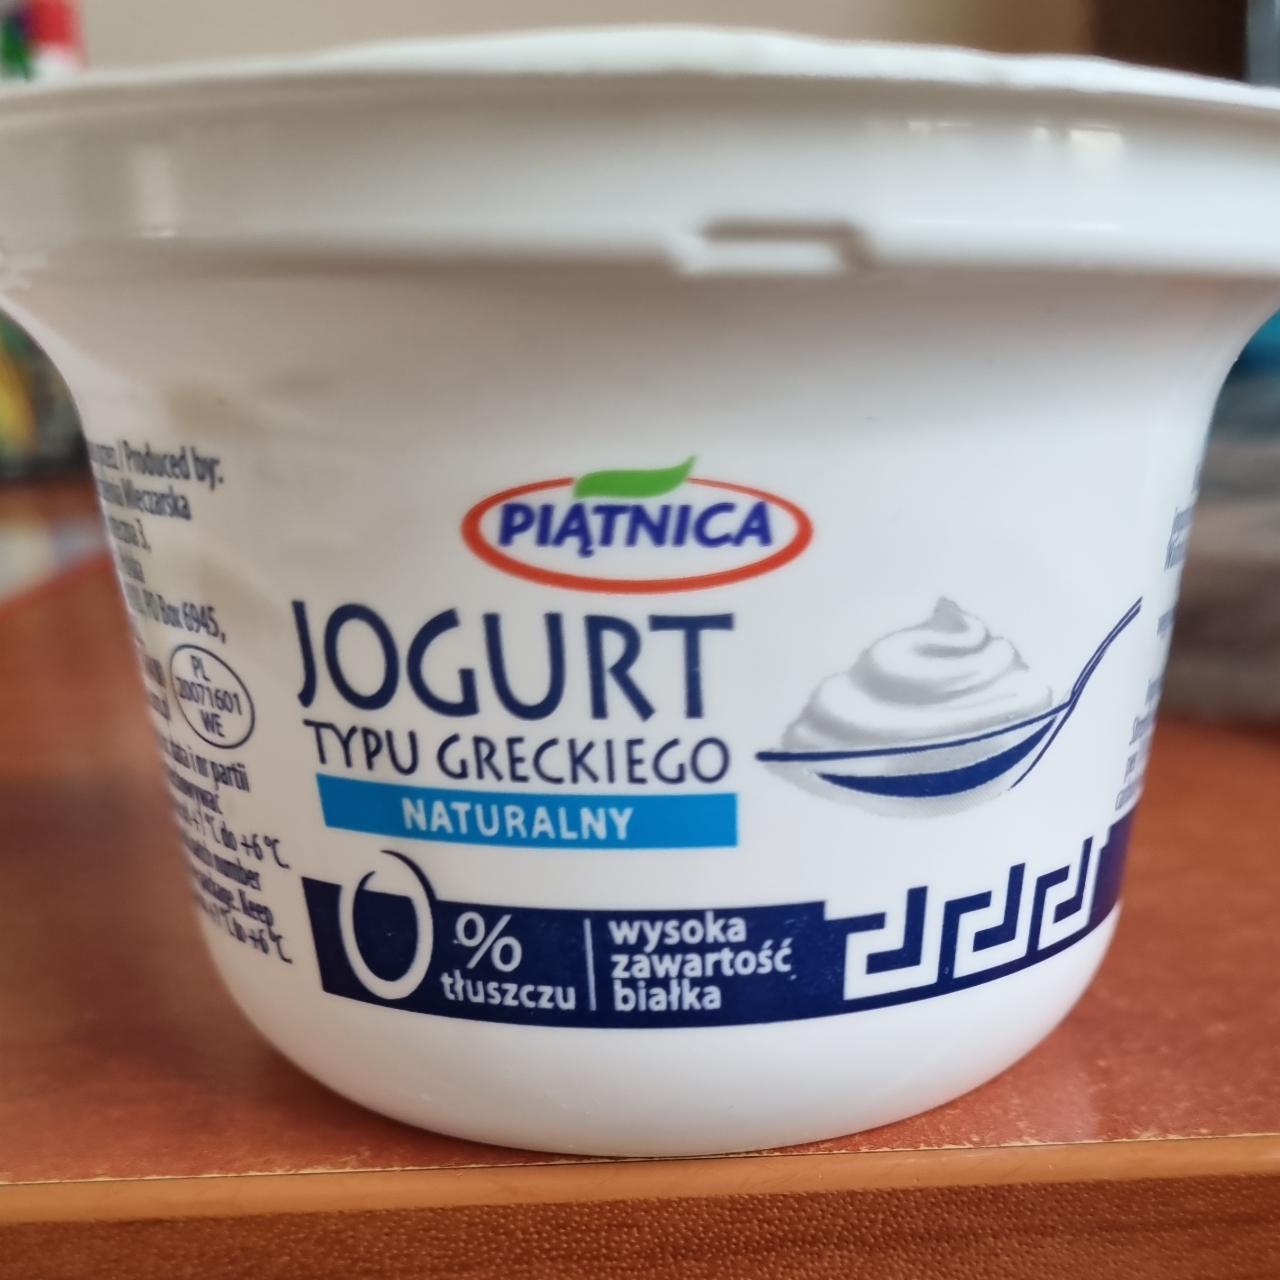 Fotografie - Jogurt typu greckiego Naturalny 0% tłuszczu Piątnica